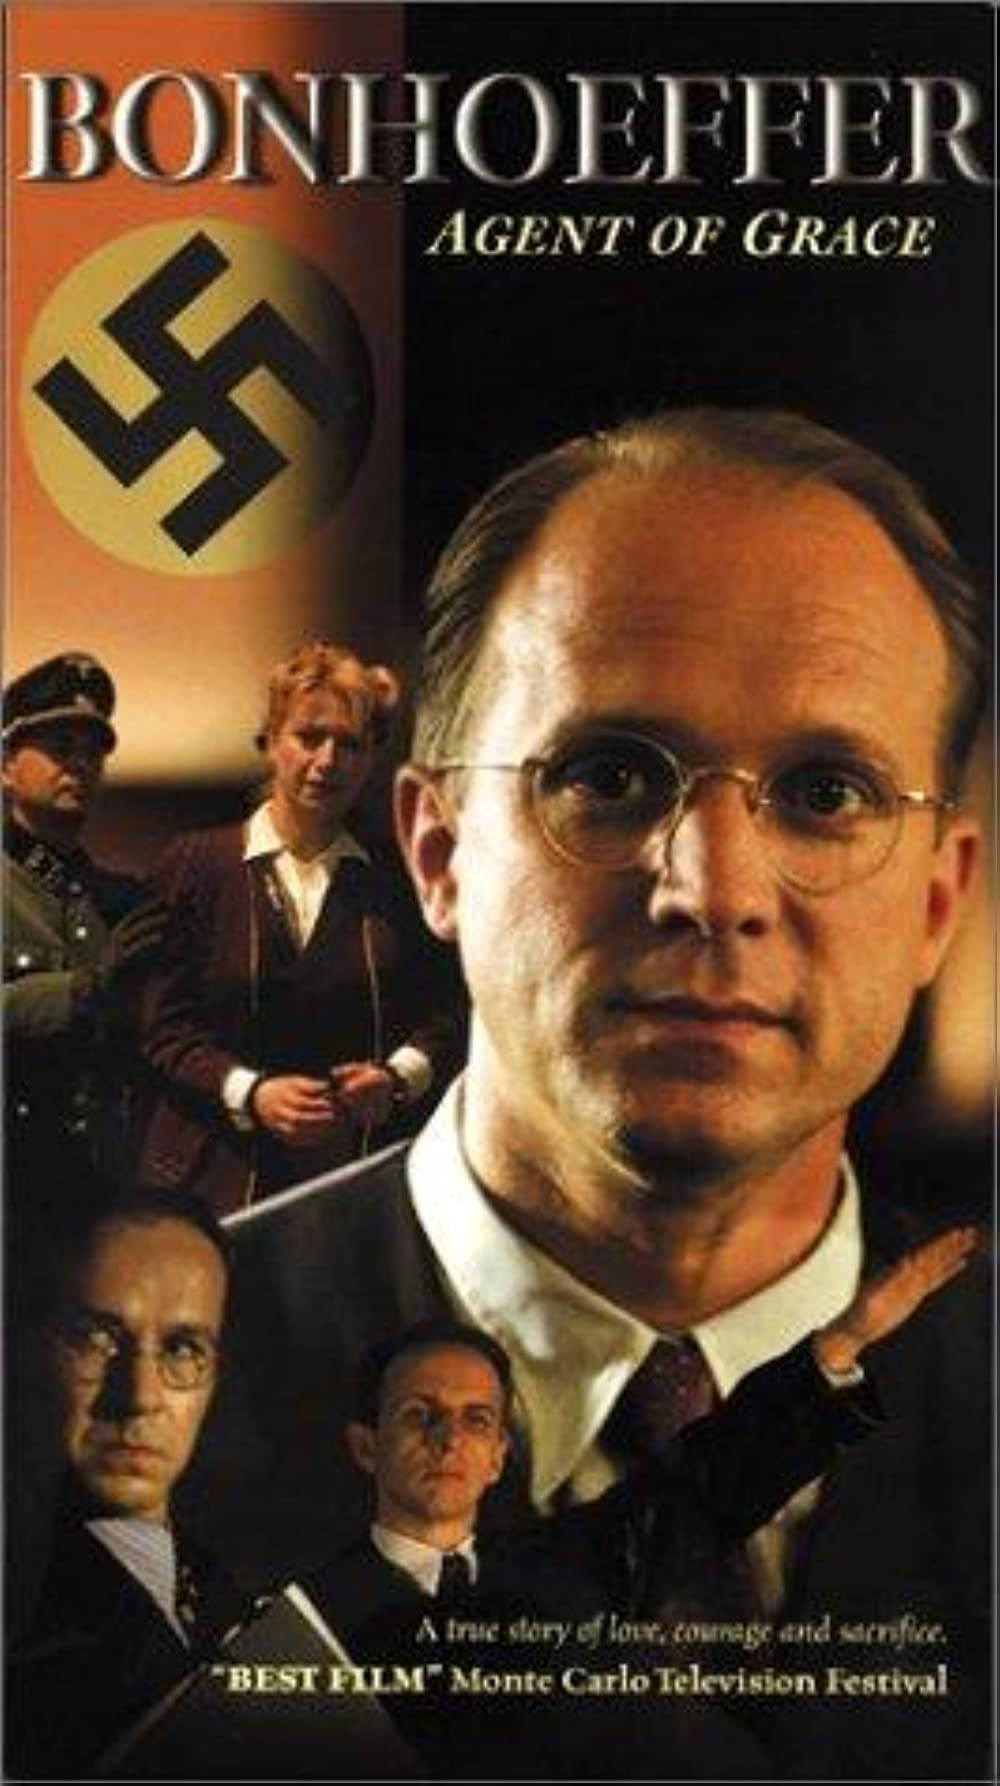 Filmbeschreibung zu Bonhoeffer: Agent of Grace